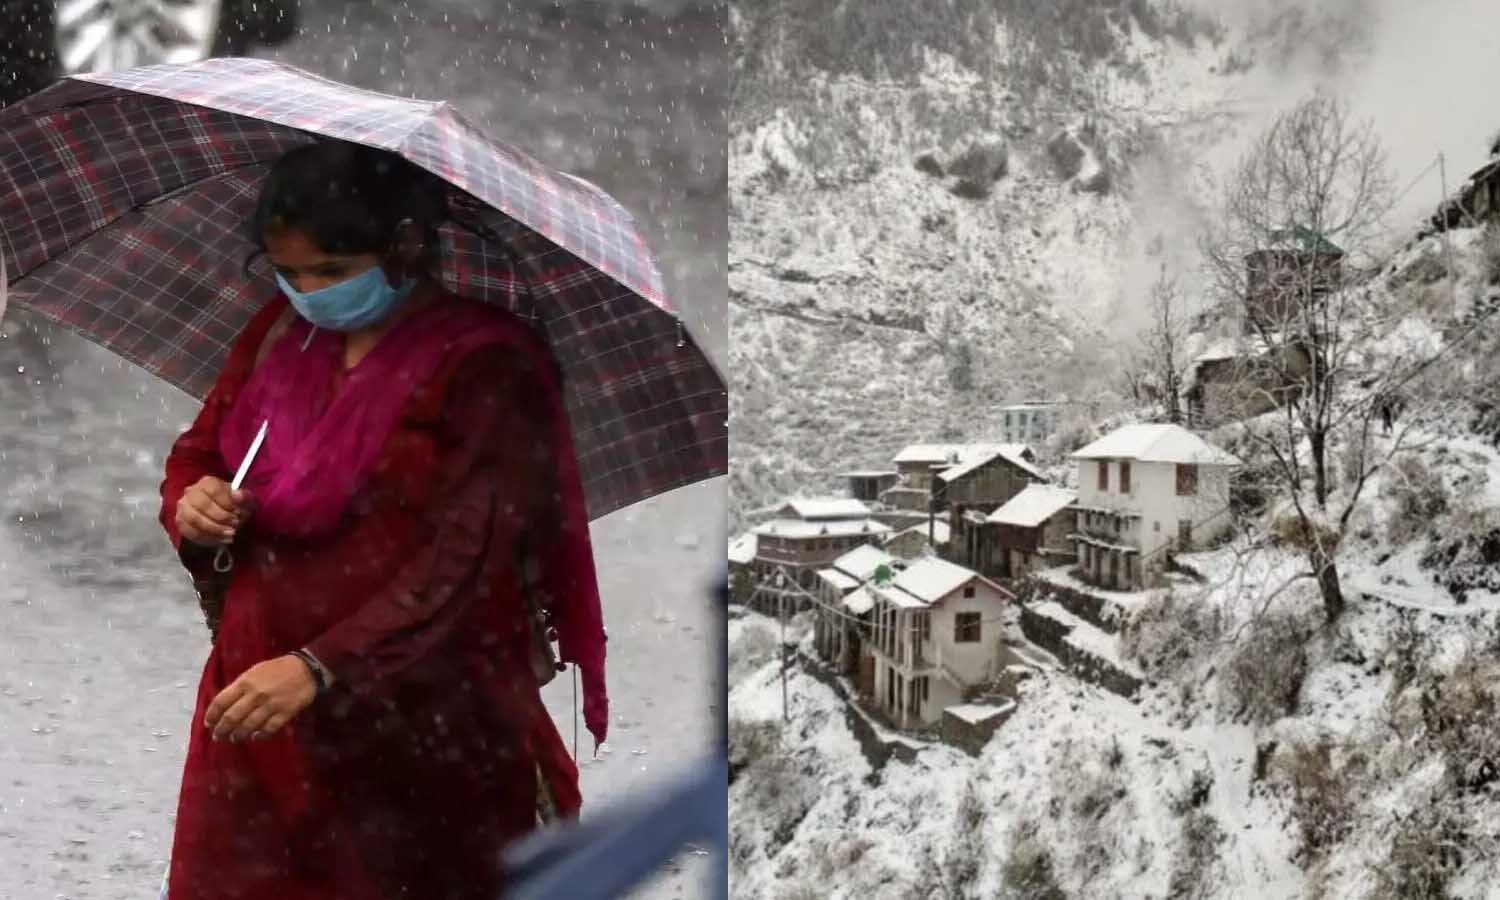 Aaj ka Mausam/Weather Today: उत्तर भारत के शुरू हुआ सर्दी का सितम, तेजी से गिरेगा न्यूनतम तापमान